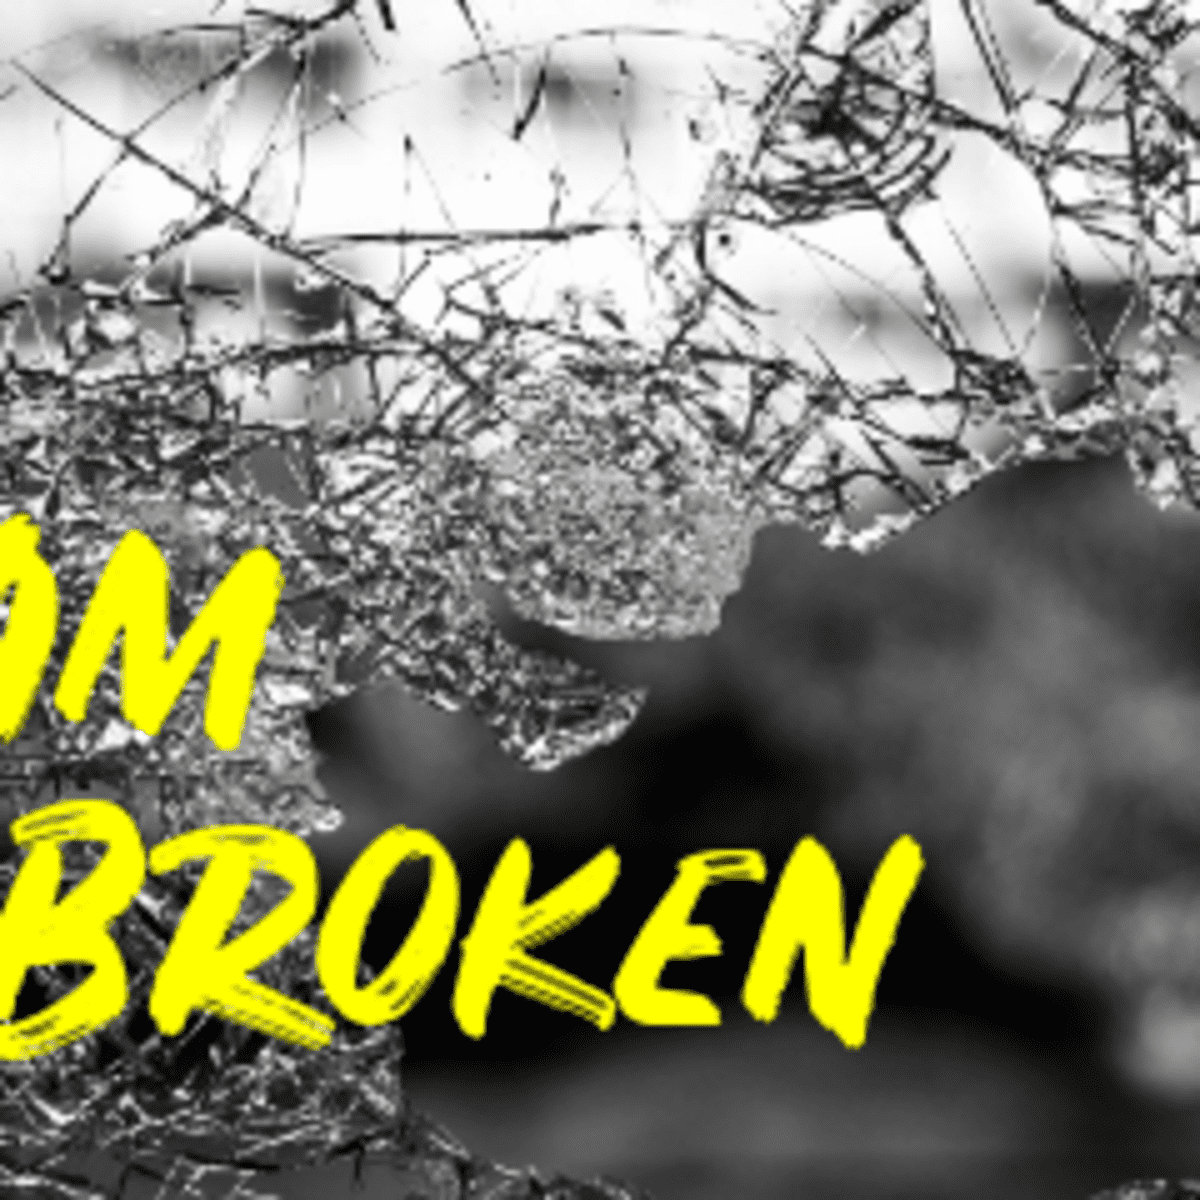 Poem: I Am Broken - LetterPile